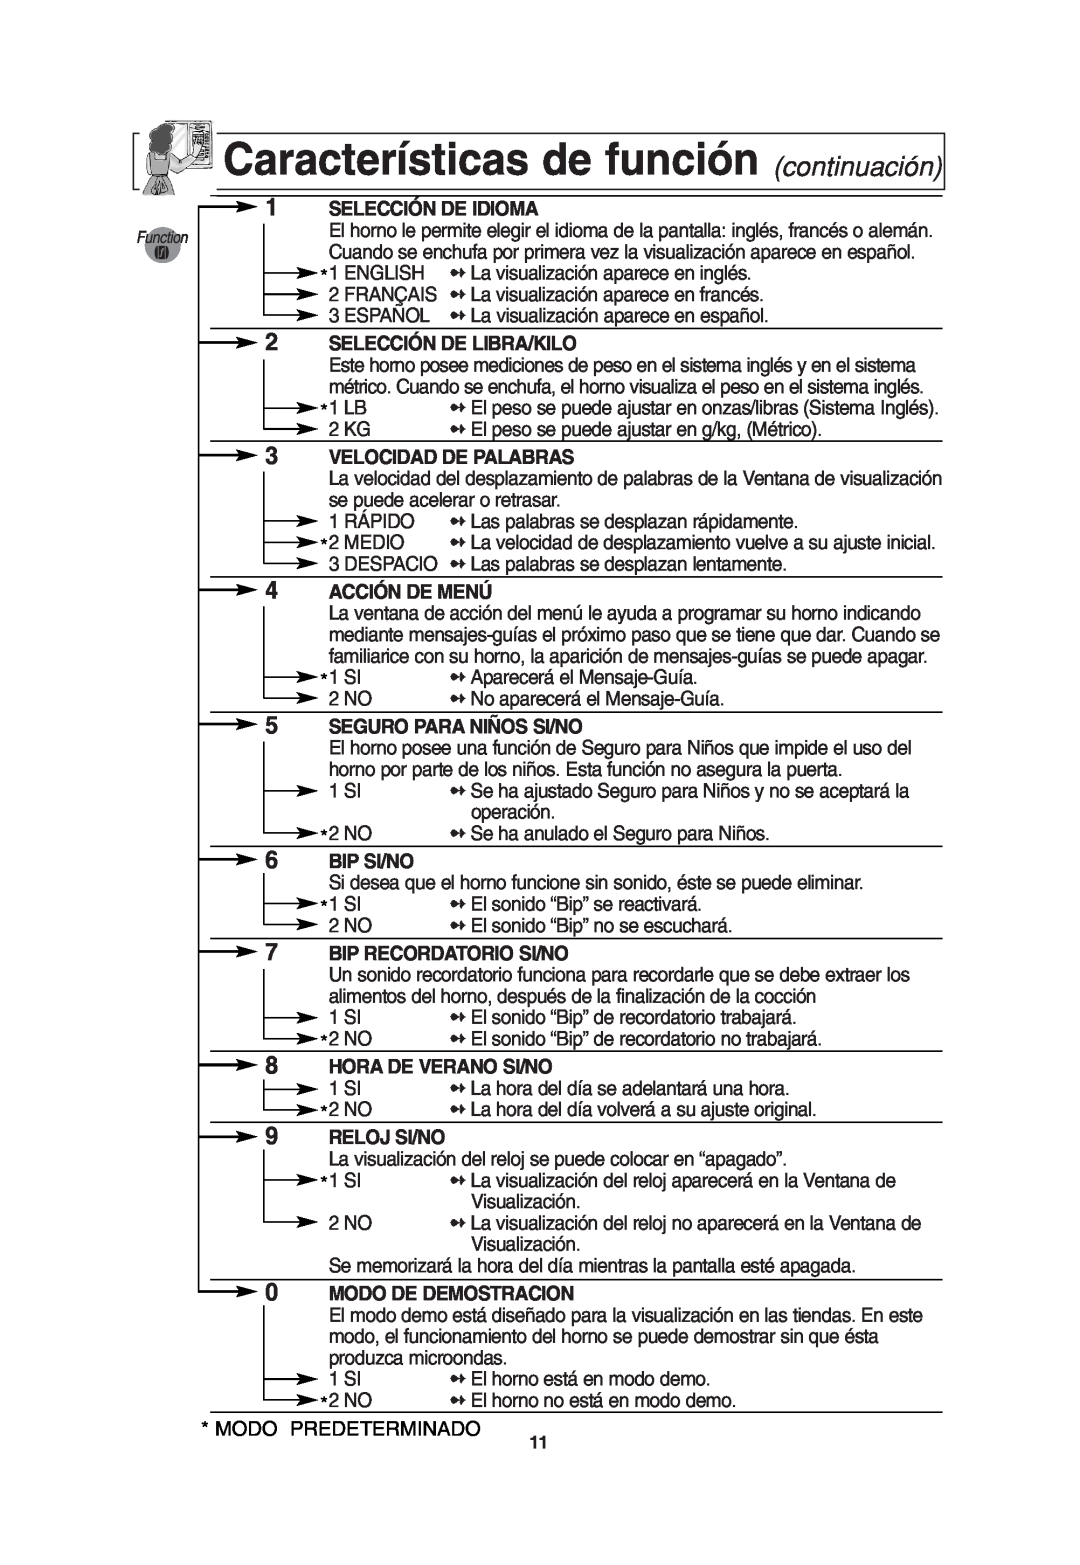 Panasonic NN-T675 Características de función continuación, Selección De Idioma, Selección De Libra/Kilo, Acción De Menú 